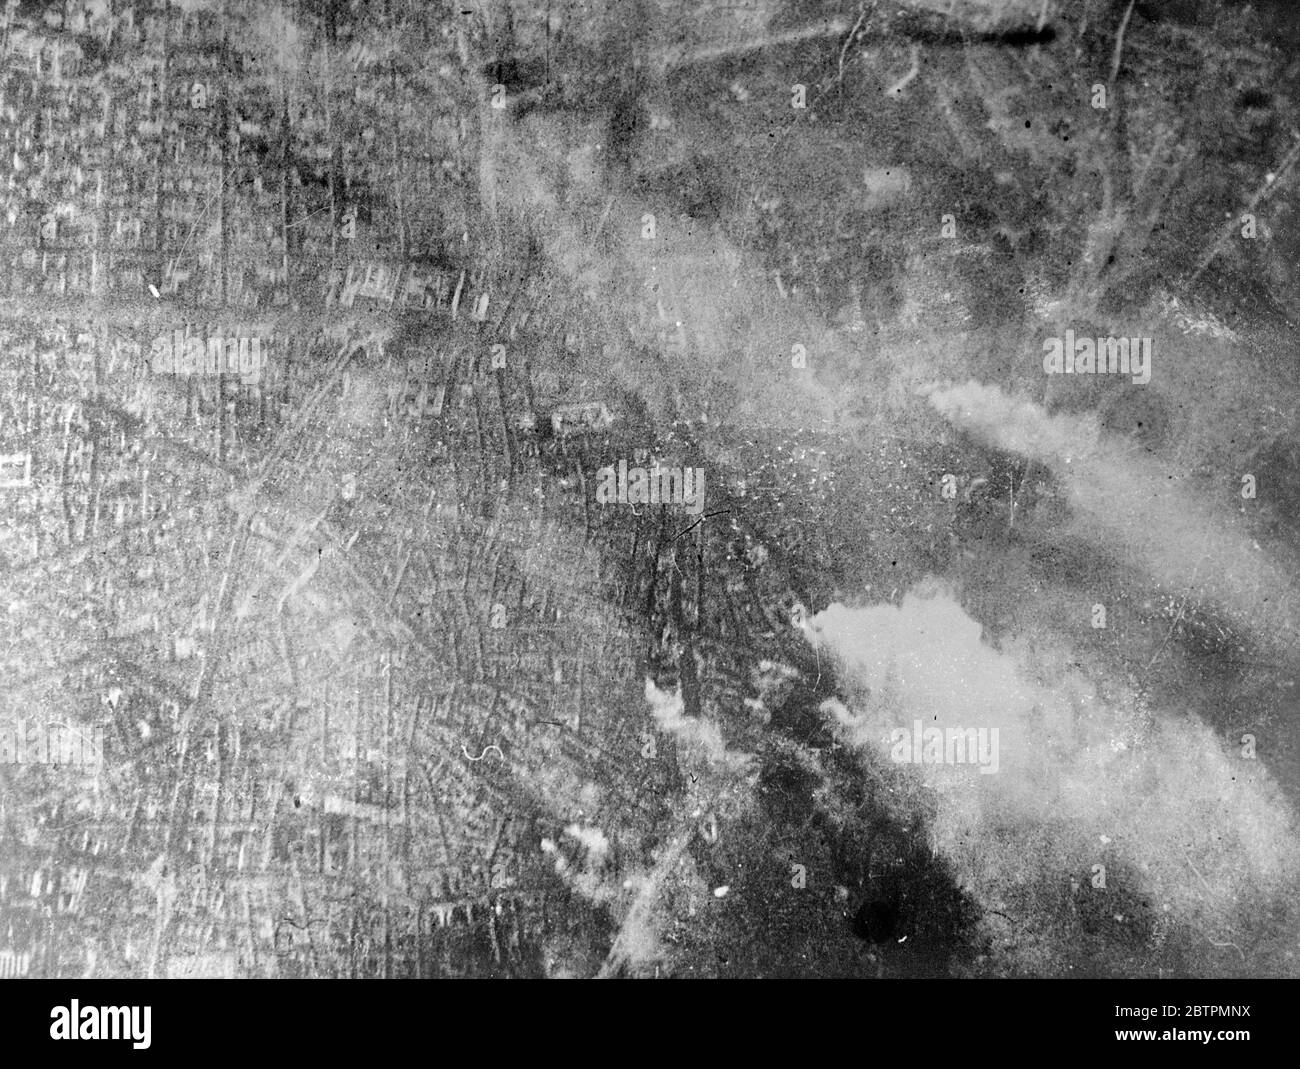 Madrid unter Beschuss . Bild aus der Luft . Eine Luftaufnahme von Madrid als Hauptstadt wurde einem intensiven Bombardement durch die belagerten Kräfte von General Franco ausgesetzt. Rauchwolken steigen aus zahlreichen Feuer, die durch die Bombardierung ausgelöst wurden. 30 März 1937 Stockfoto